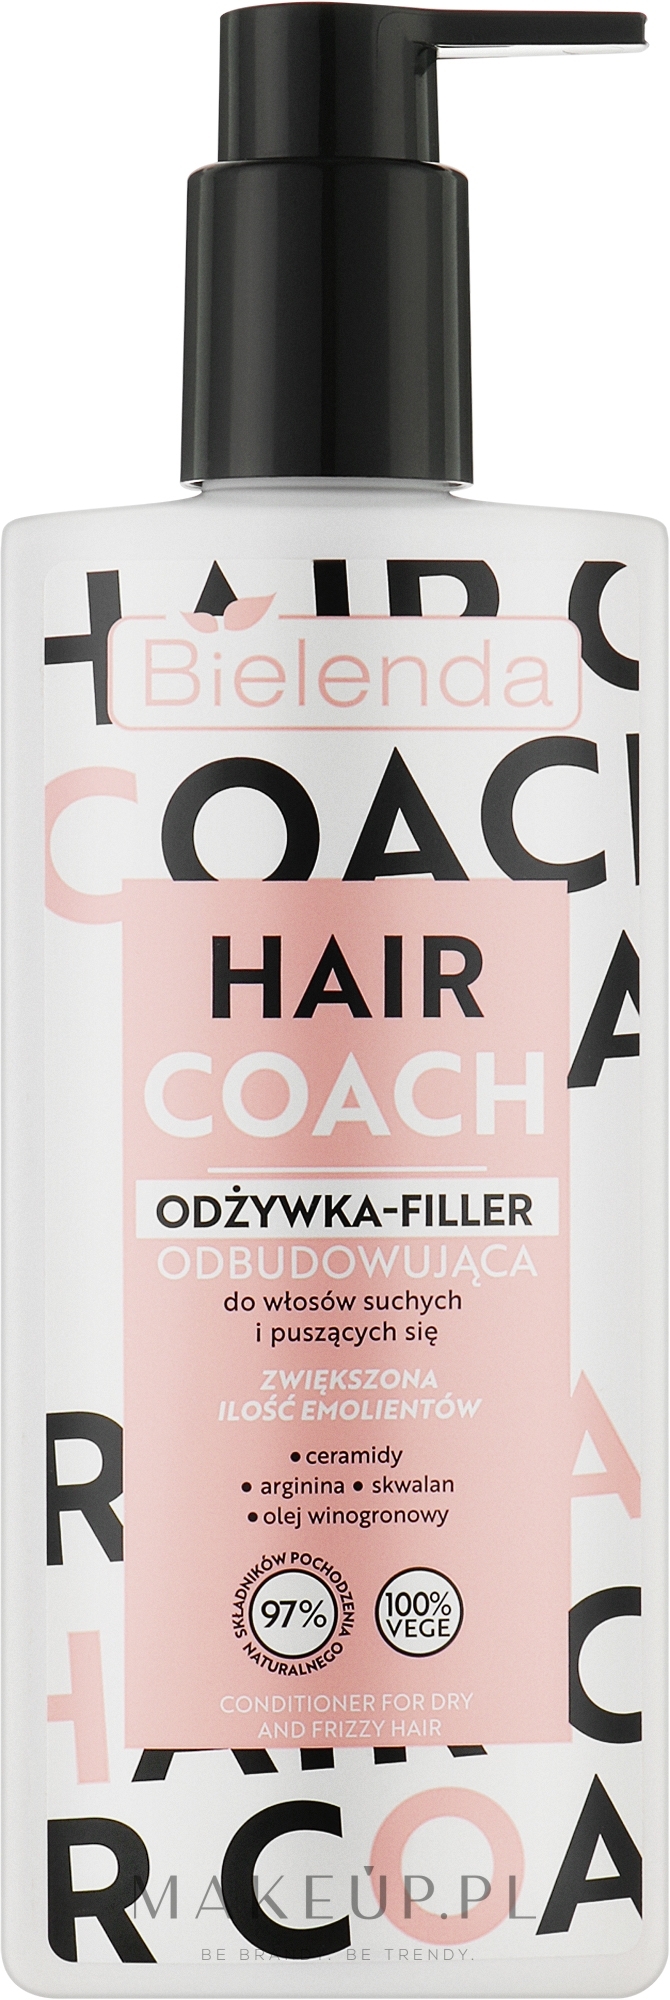 Odżywka-filler odbudowująca do włosów suchych i puszących się - Bielenda Hair Coach — Zdjęcie 280 ml